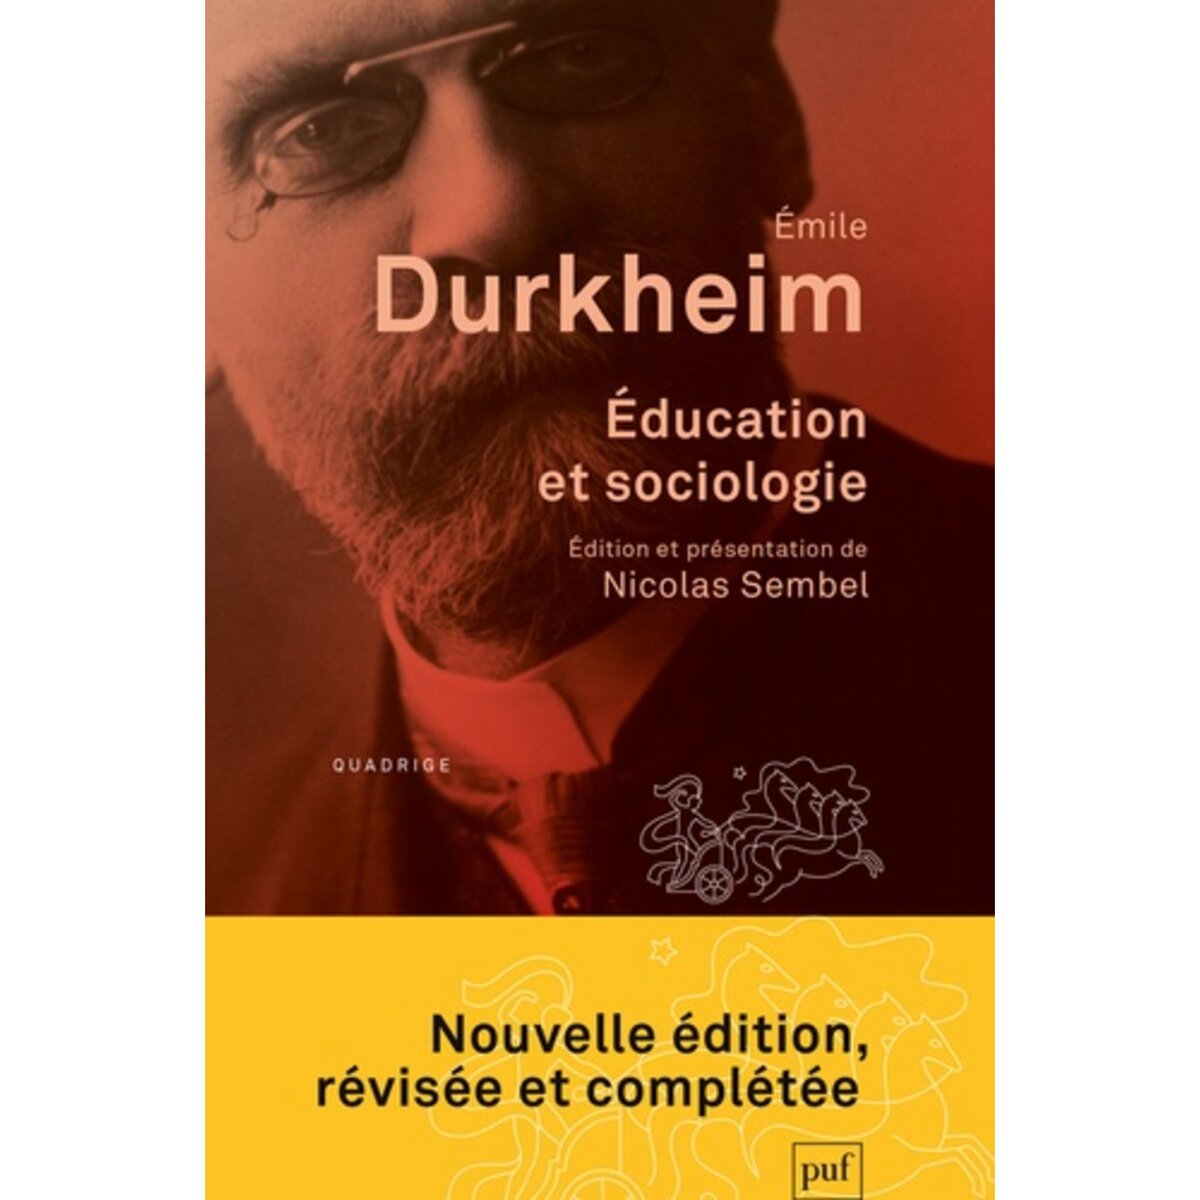  EDUCATION ET SOCIOLOGIE. EDITION REVUE ET AUGMENTEE, Durkheim Emile